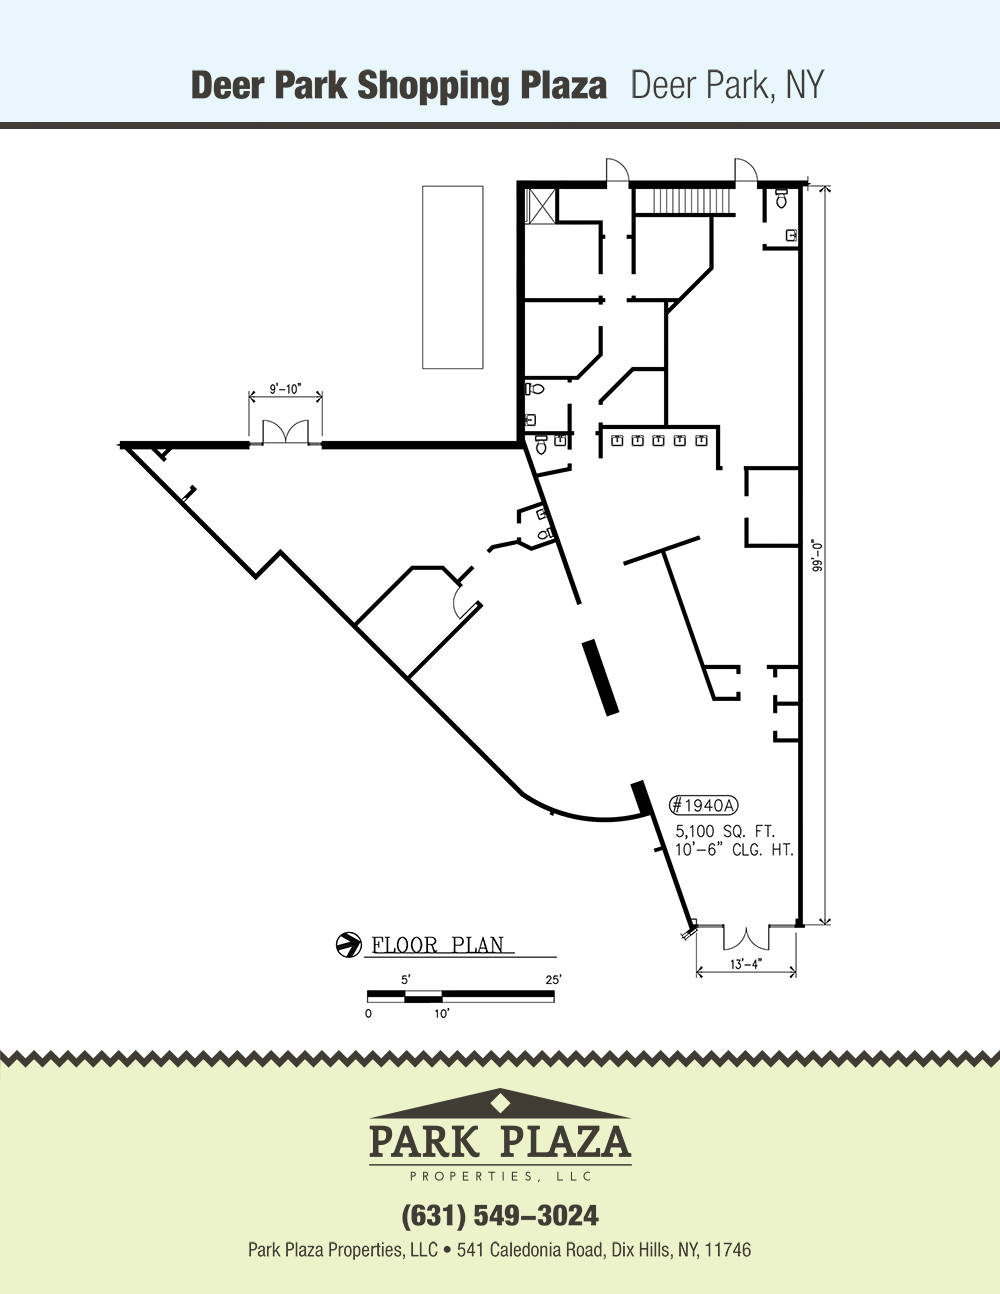 DeerPark 1940a Floor Plan Download